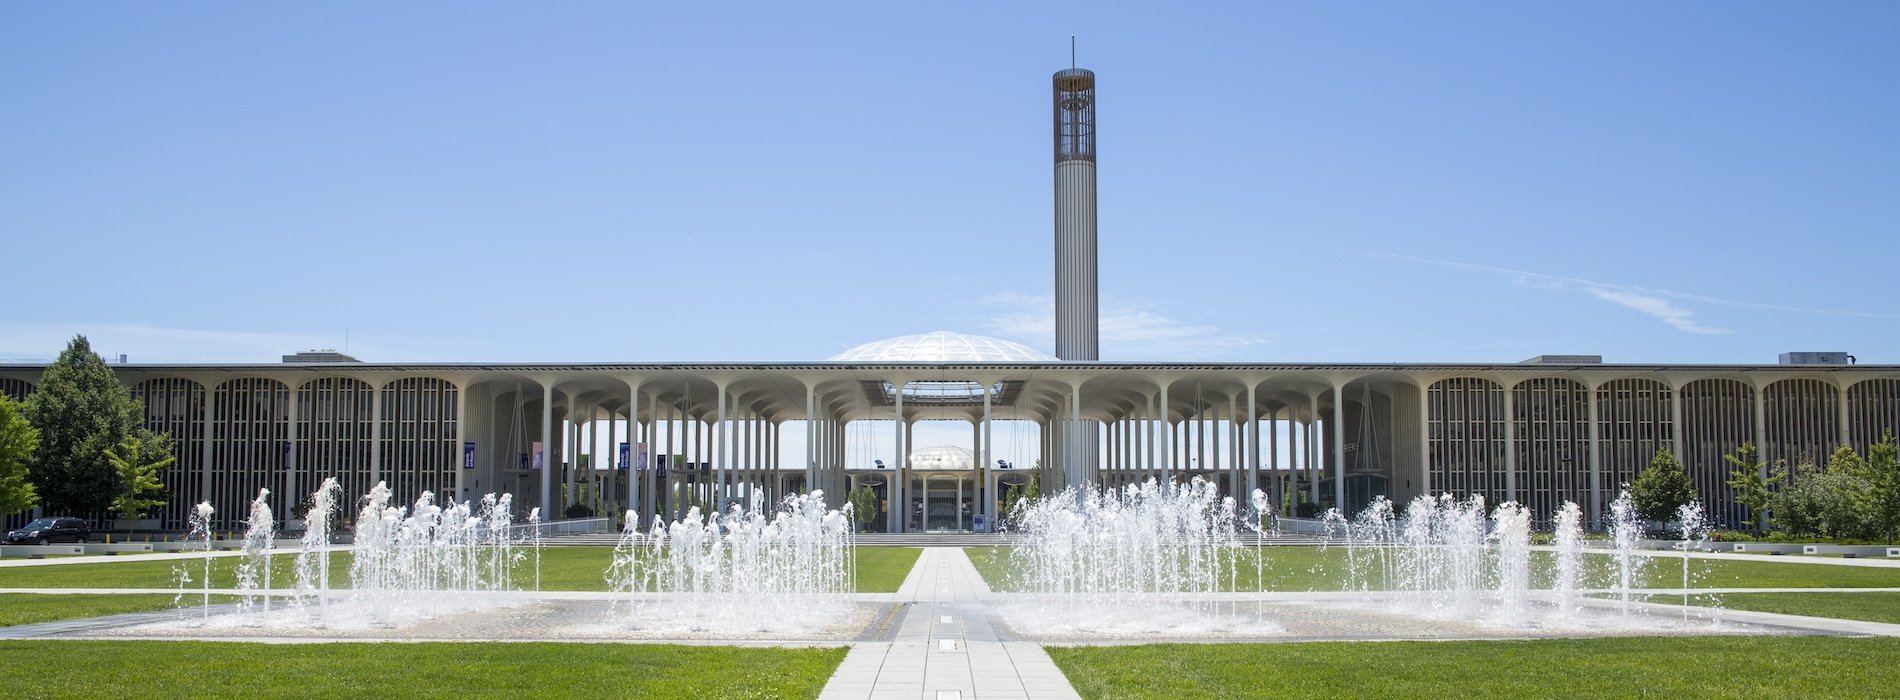 Main Campus Fountain